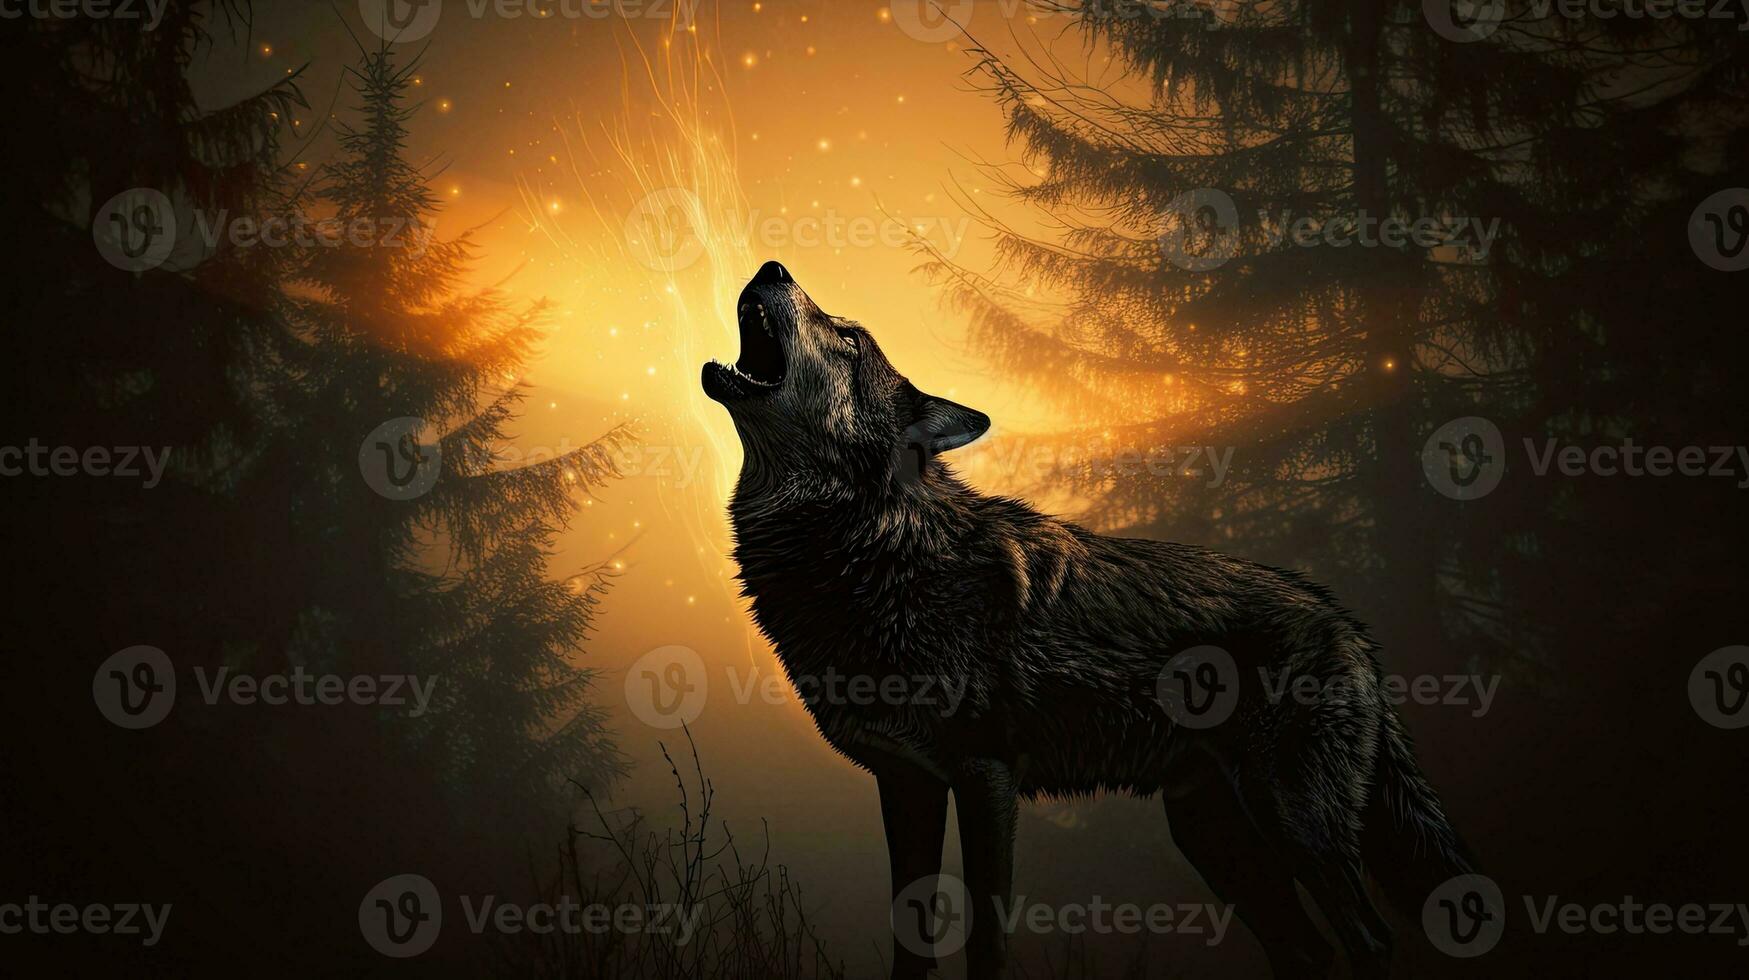 dia das Bruxas conceito Lobo silhueta uivando às cheio lua dentro nebuloso pano de fundo foto